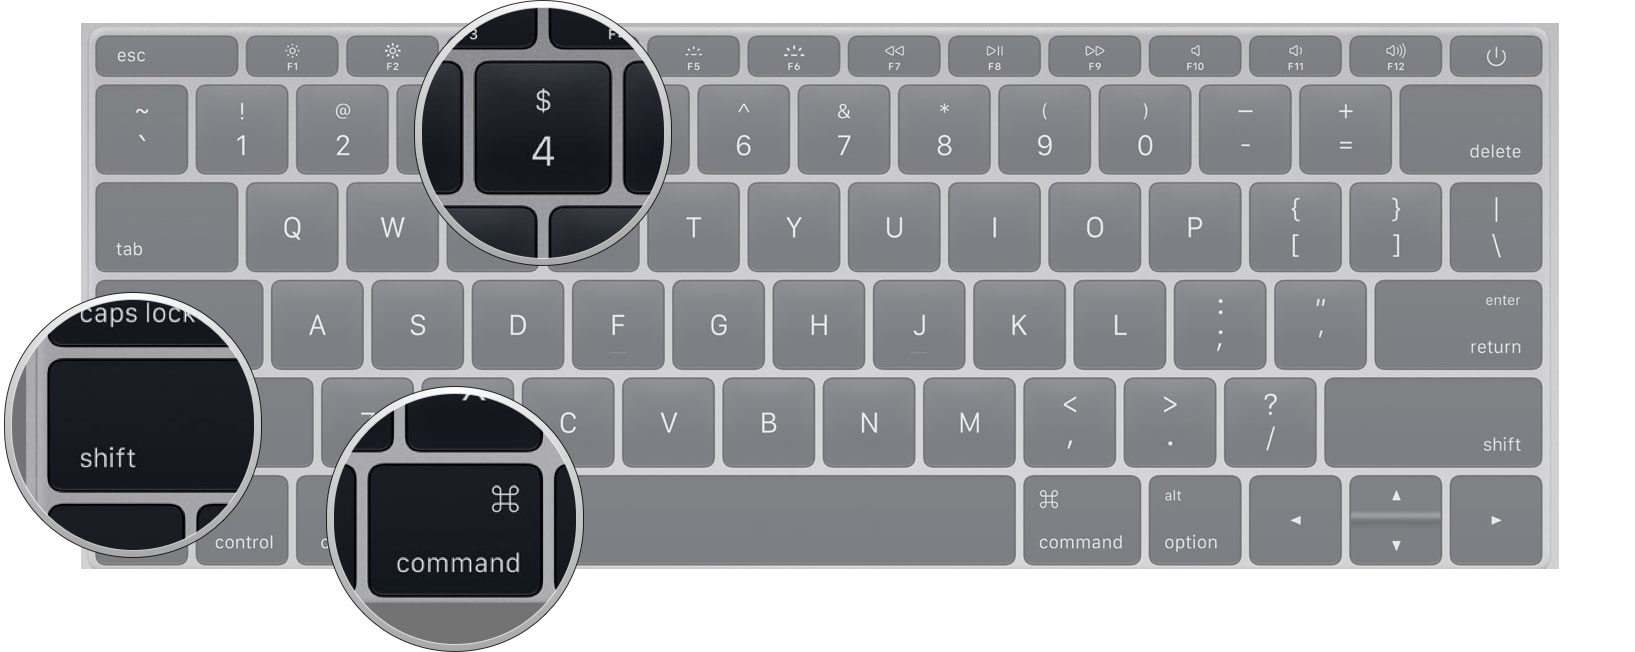 how-to-screen-shot-mac-keyboard-4.jpg